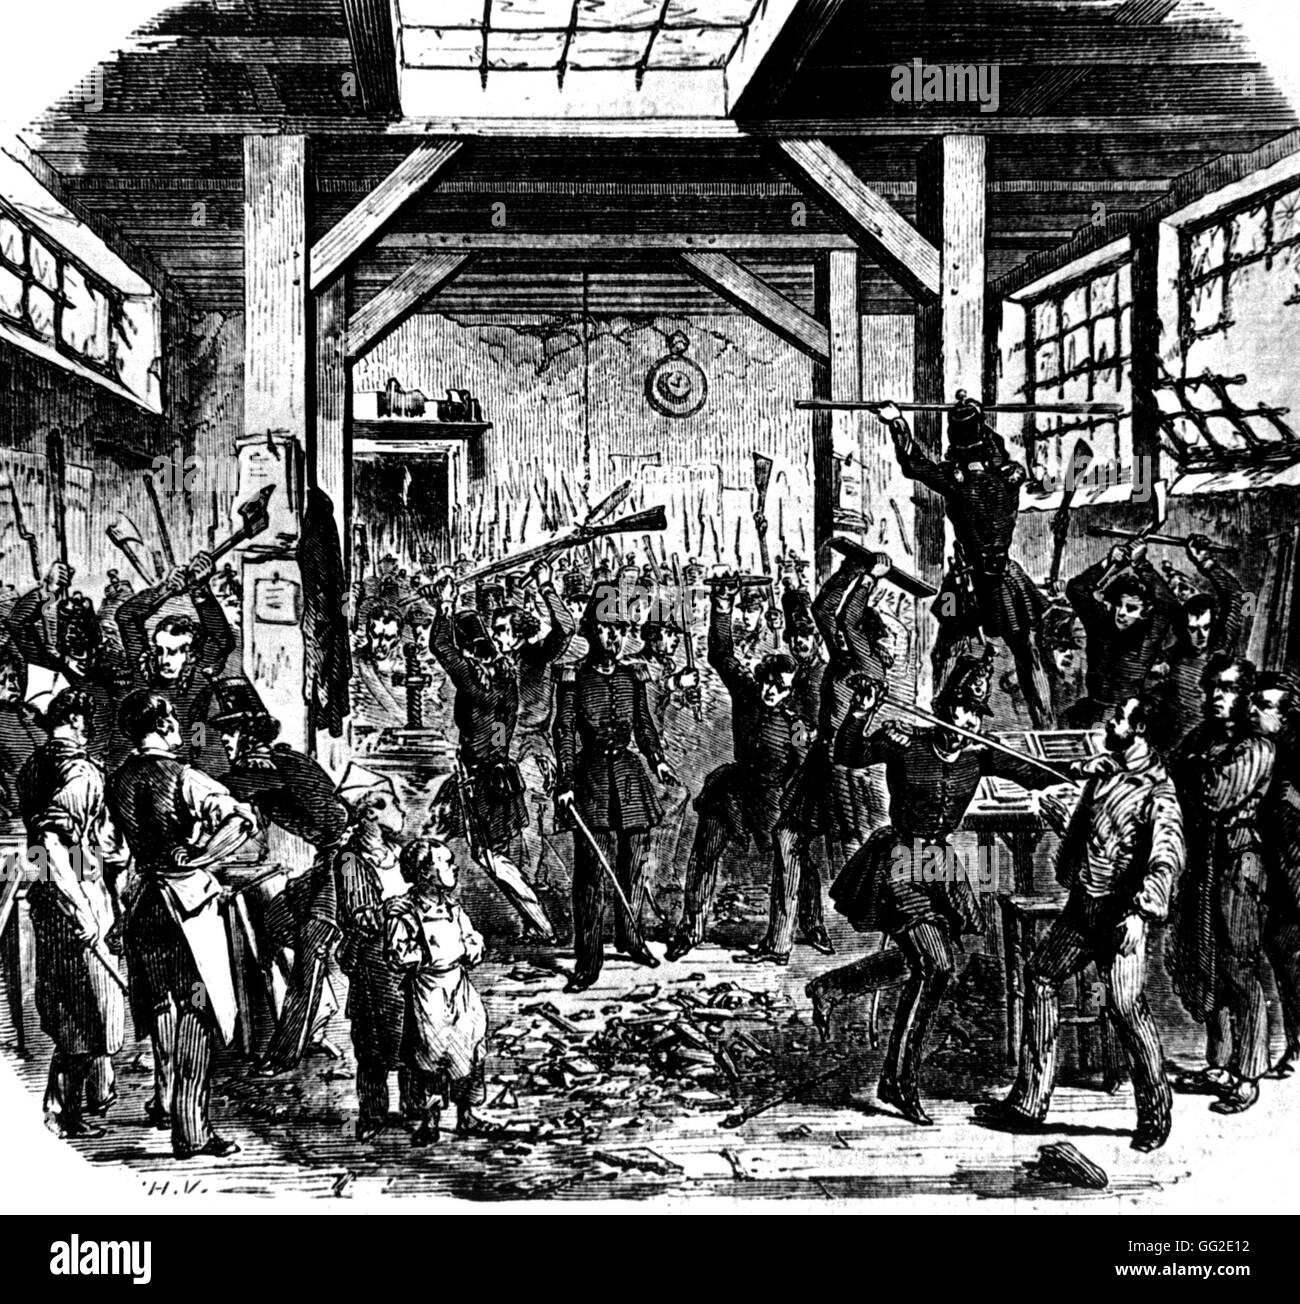 Junio 13, 1849: Los hombres de la Guardia Nacional introduciendo el Boute imprentas que imprime periódicos democráticos Francia Paris 1849. Musée Carnavalet Foto de stock